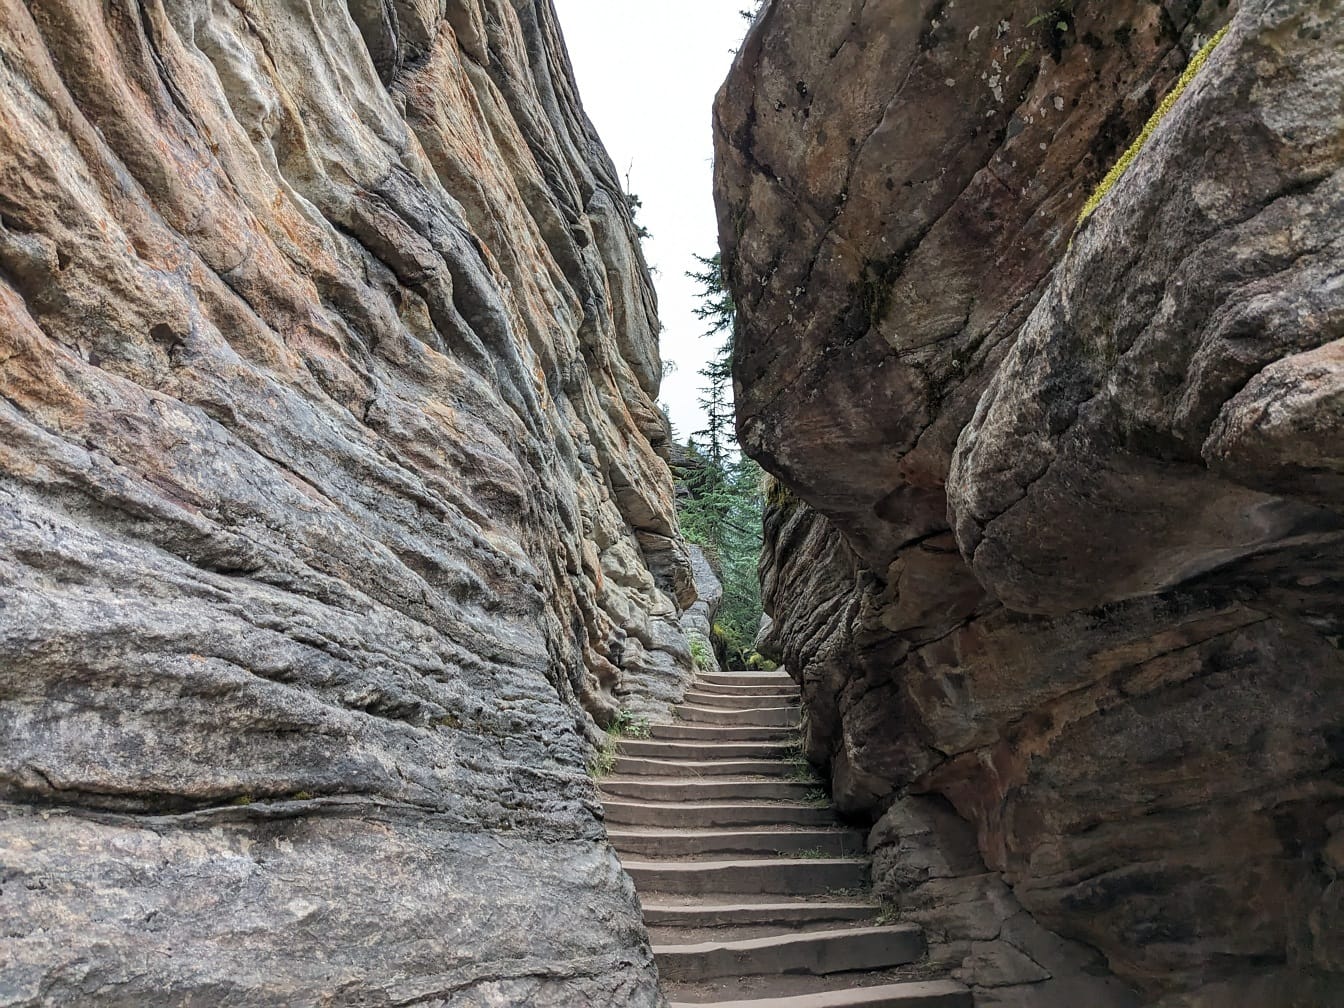 カナダ国立公園の狭い崖の通路にある石段